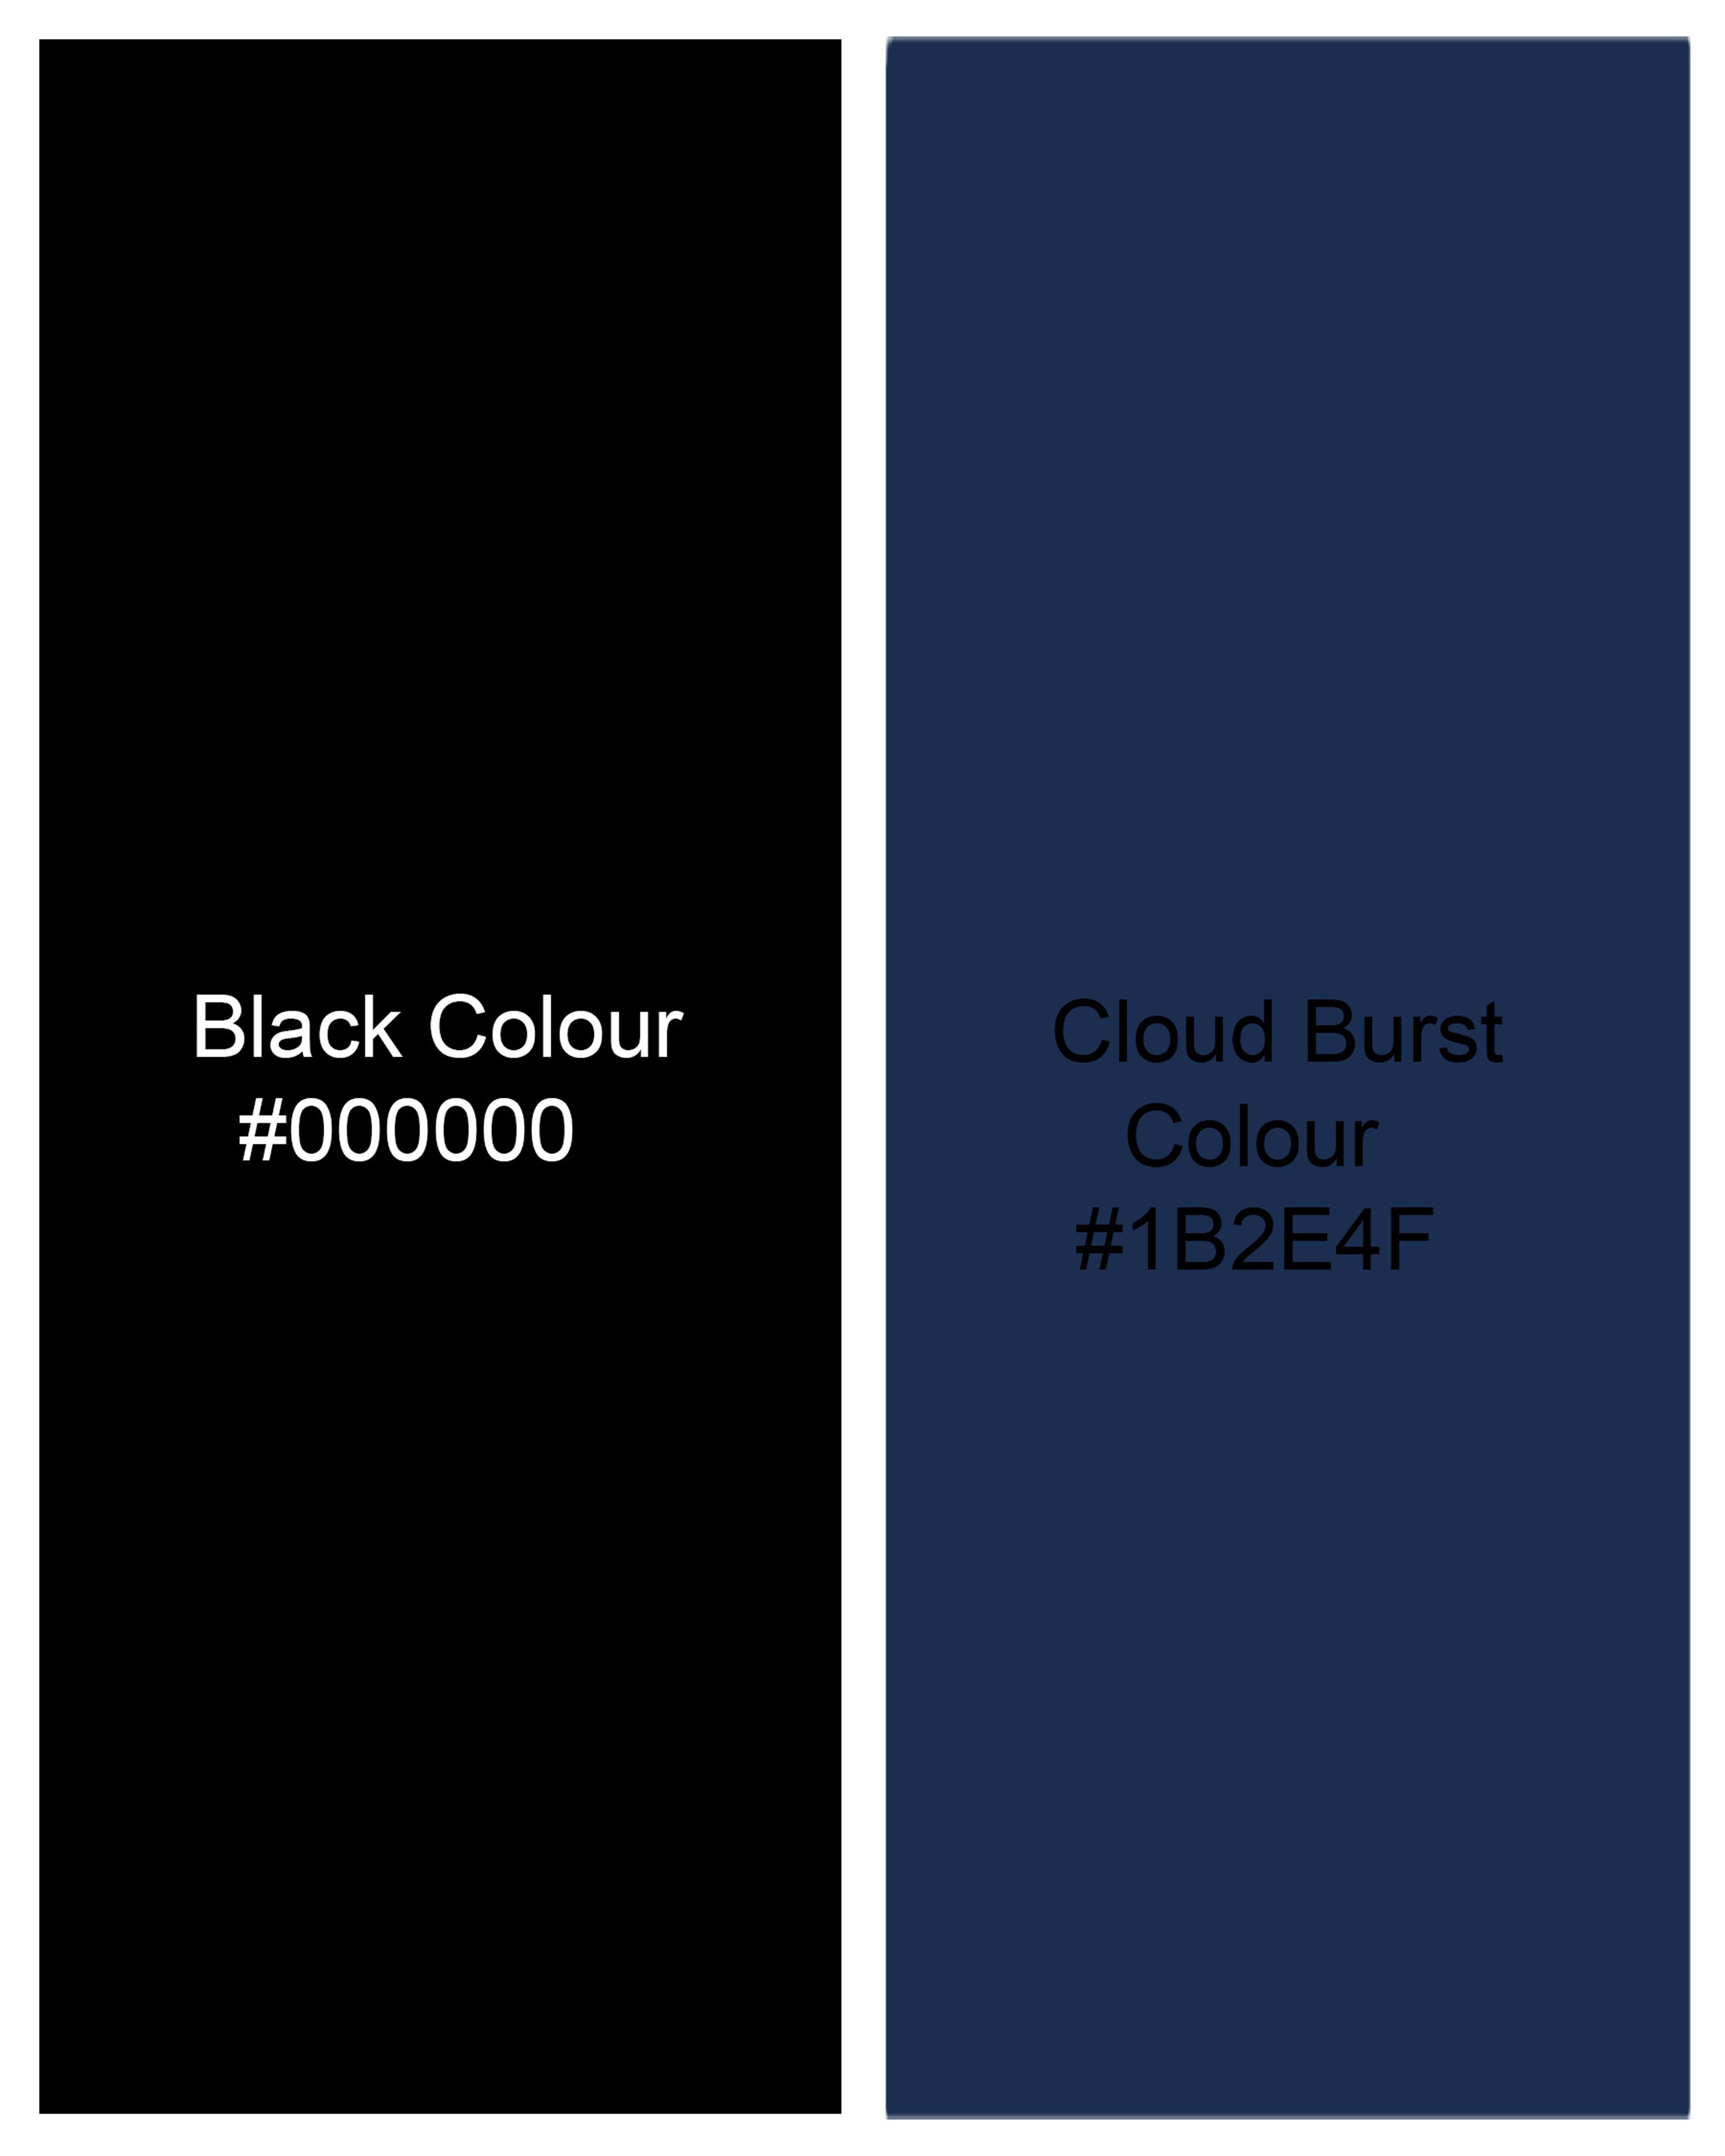 Jade Black with Cloud Burst Blue Striped Single Breasted Blazer BL2059-SBP-36, BL2059-SBP-38, BL2059-SBP-40, BL2059-SBP-42, BL2059-SBP-44, BL2059-SBP-46, BL2059-SBP-48, BL2059-SBP-50, BL2059-SBP-52, BL2059-SBP-54, BL2059-SBP-56, BL2059-SBP-58, BL2059-SBP-60